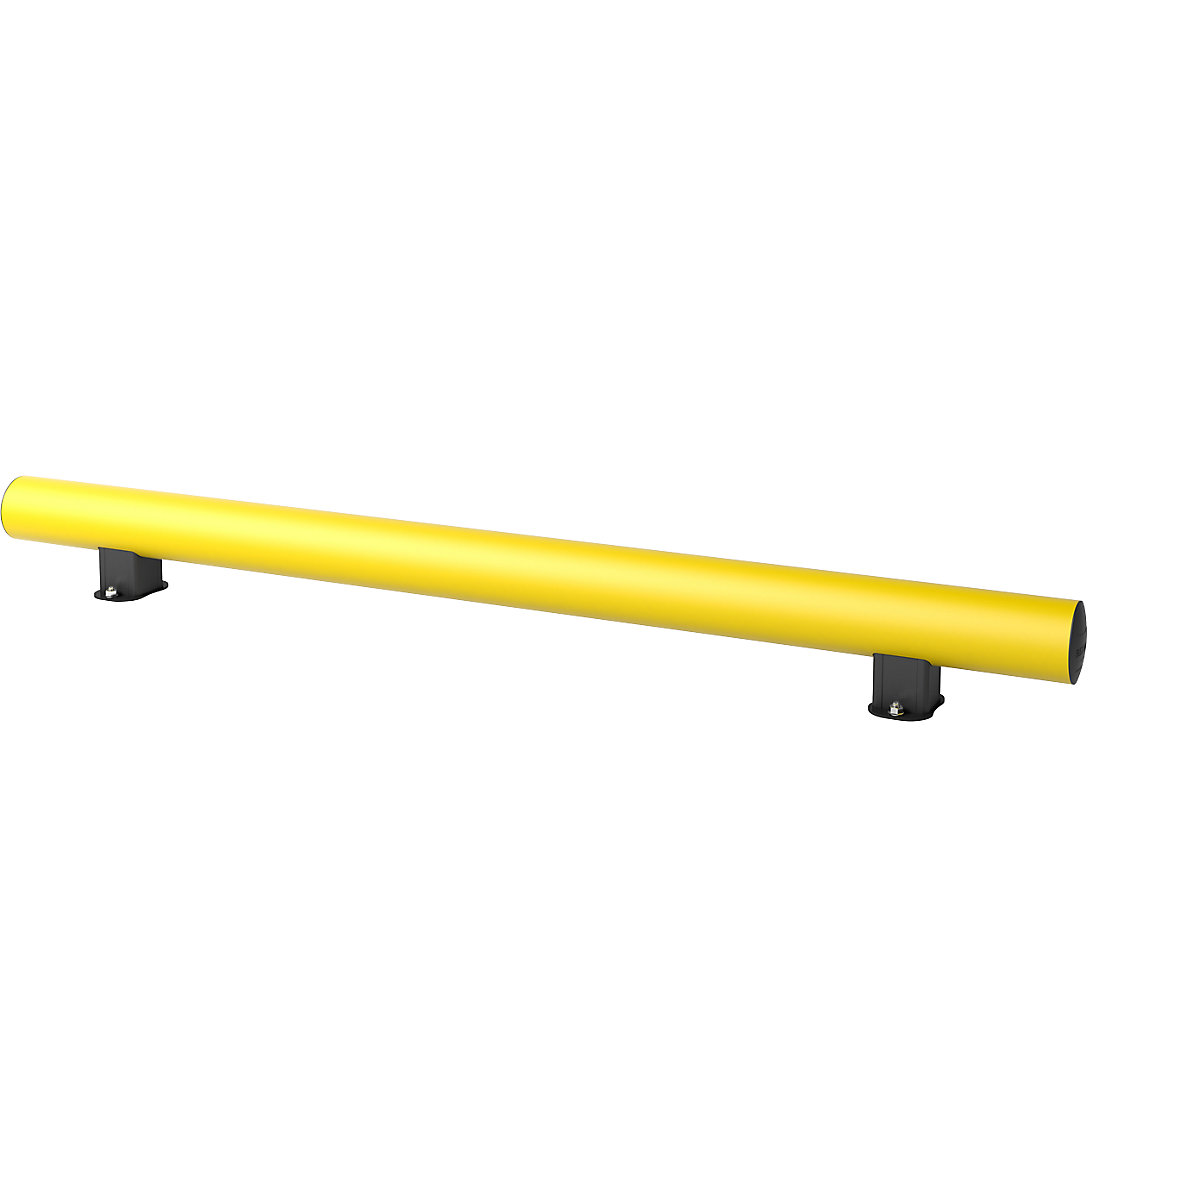 Planche de protection MINI, hauteur 198 mm, jaune, longueur 1800 mm, plastique, à cheviller